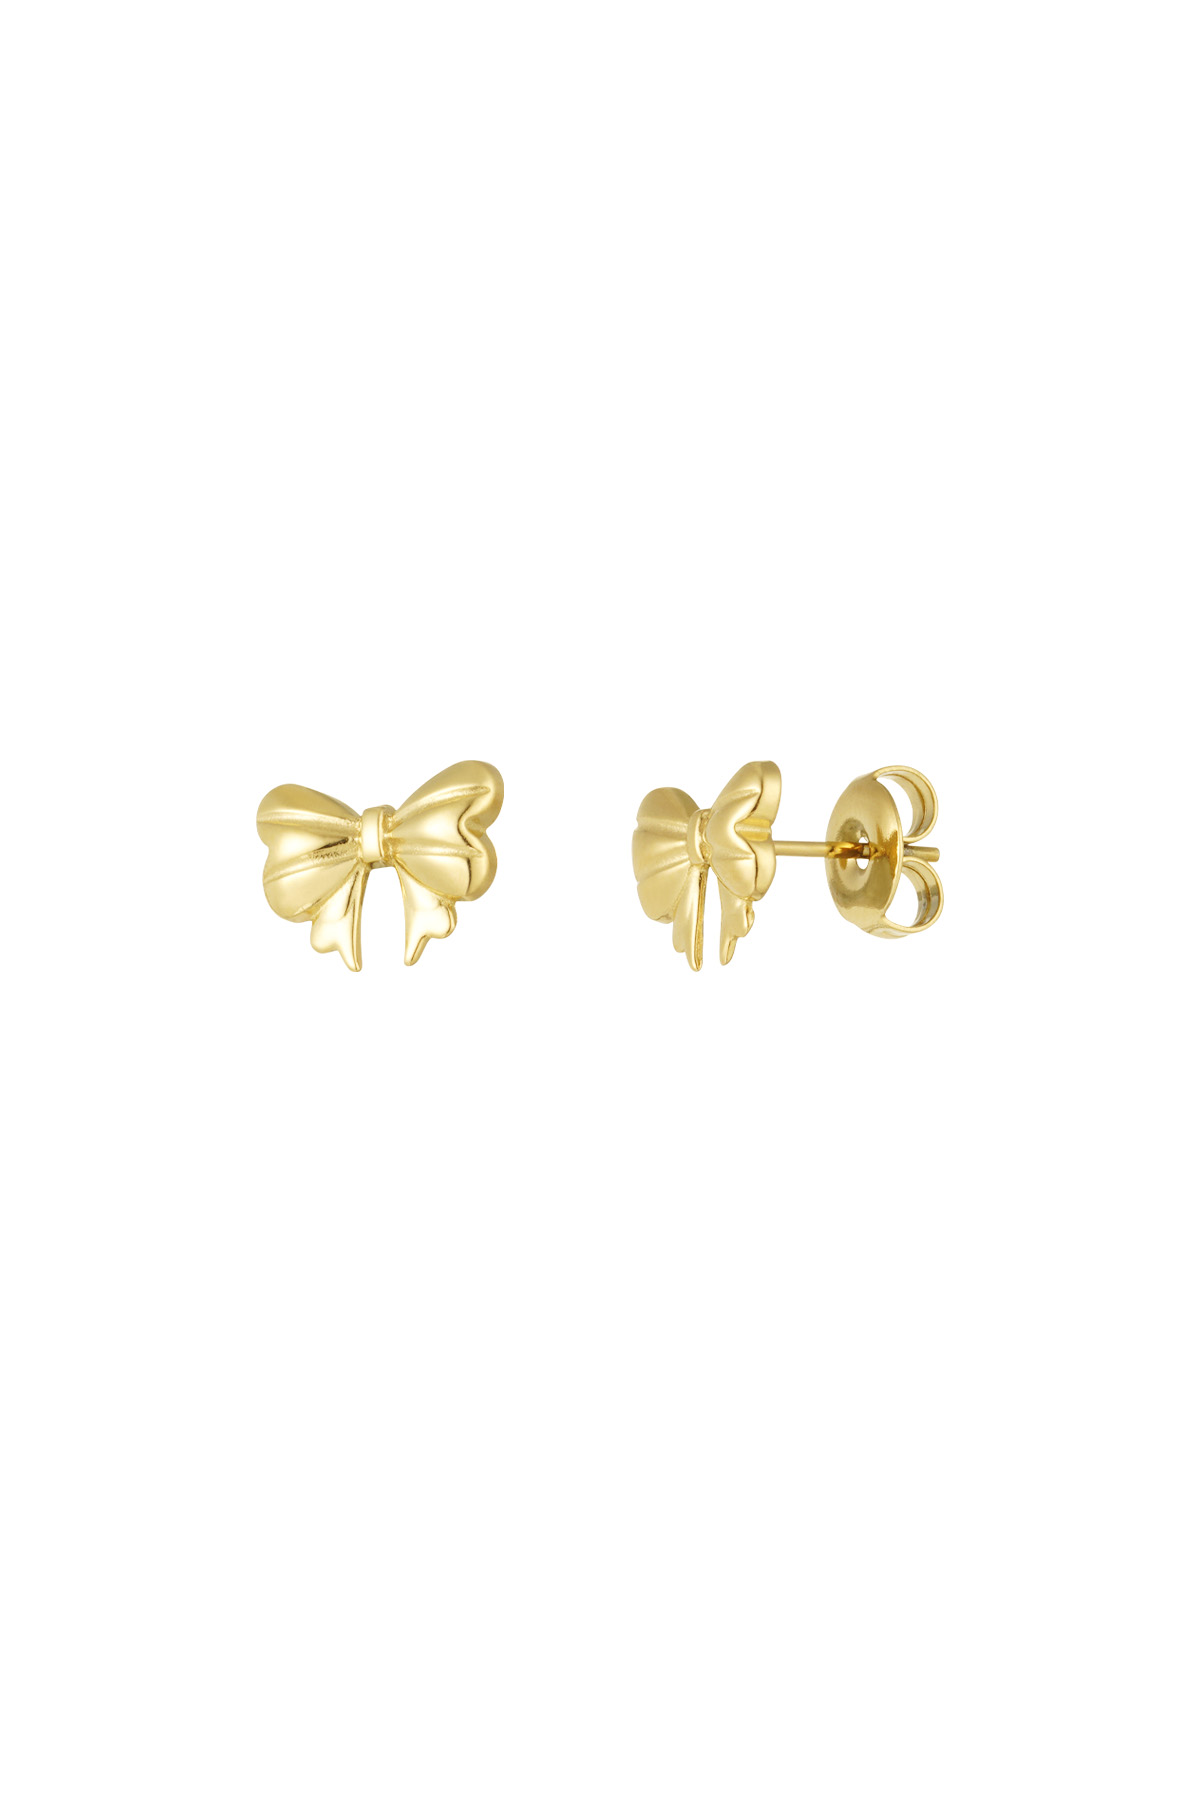 Ear studs cute bow - gold h5 